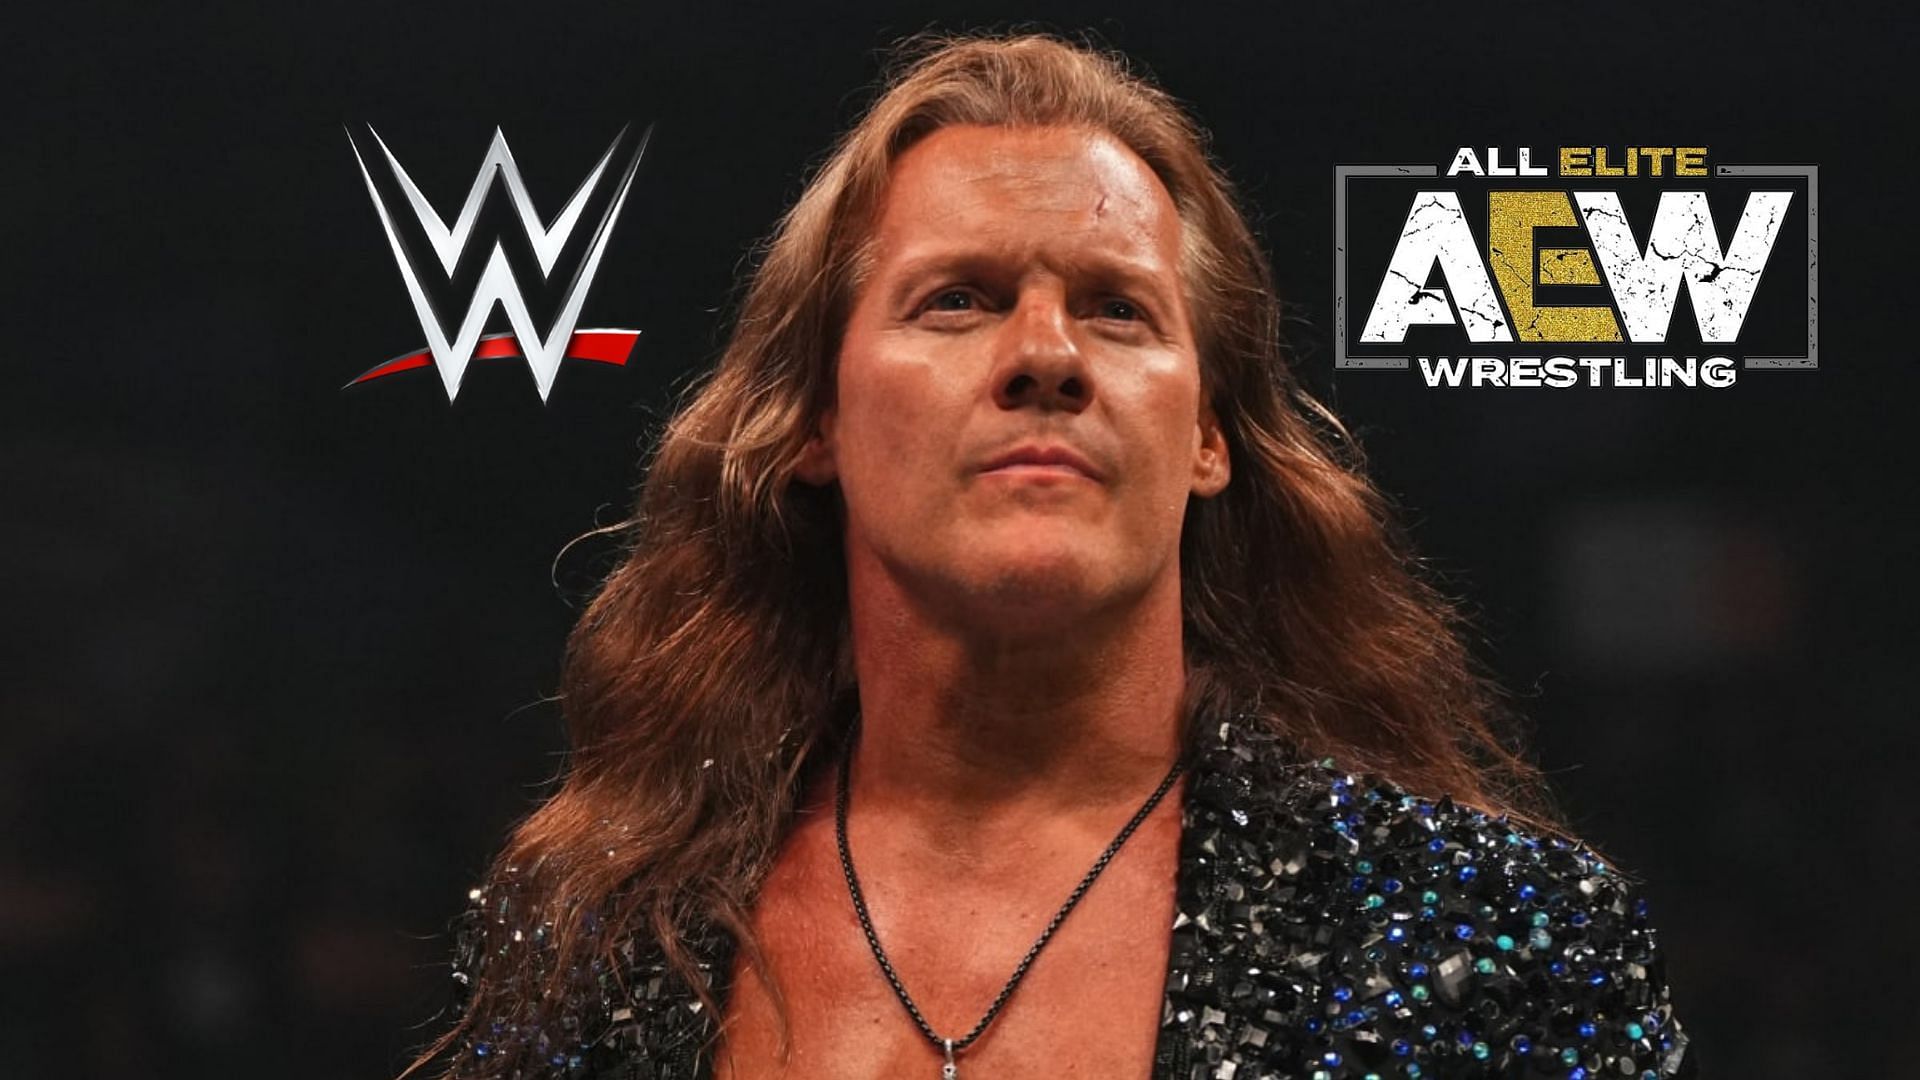 Chris Jericho lost last week on AEW Dynamite.